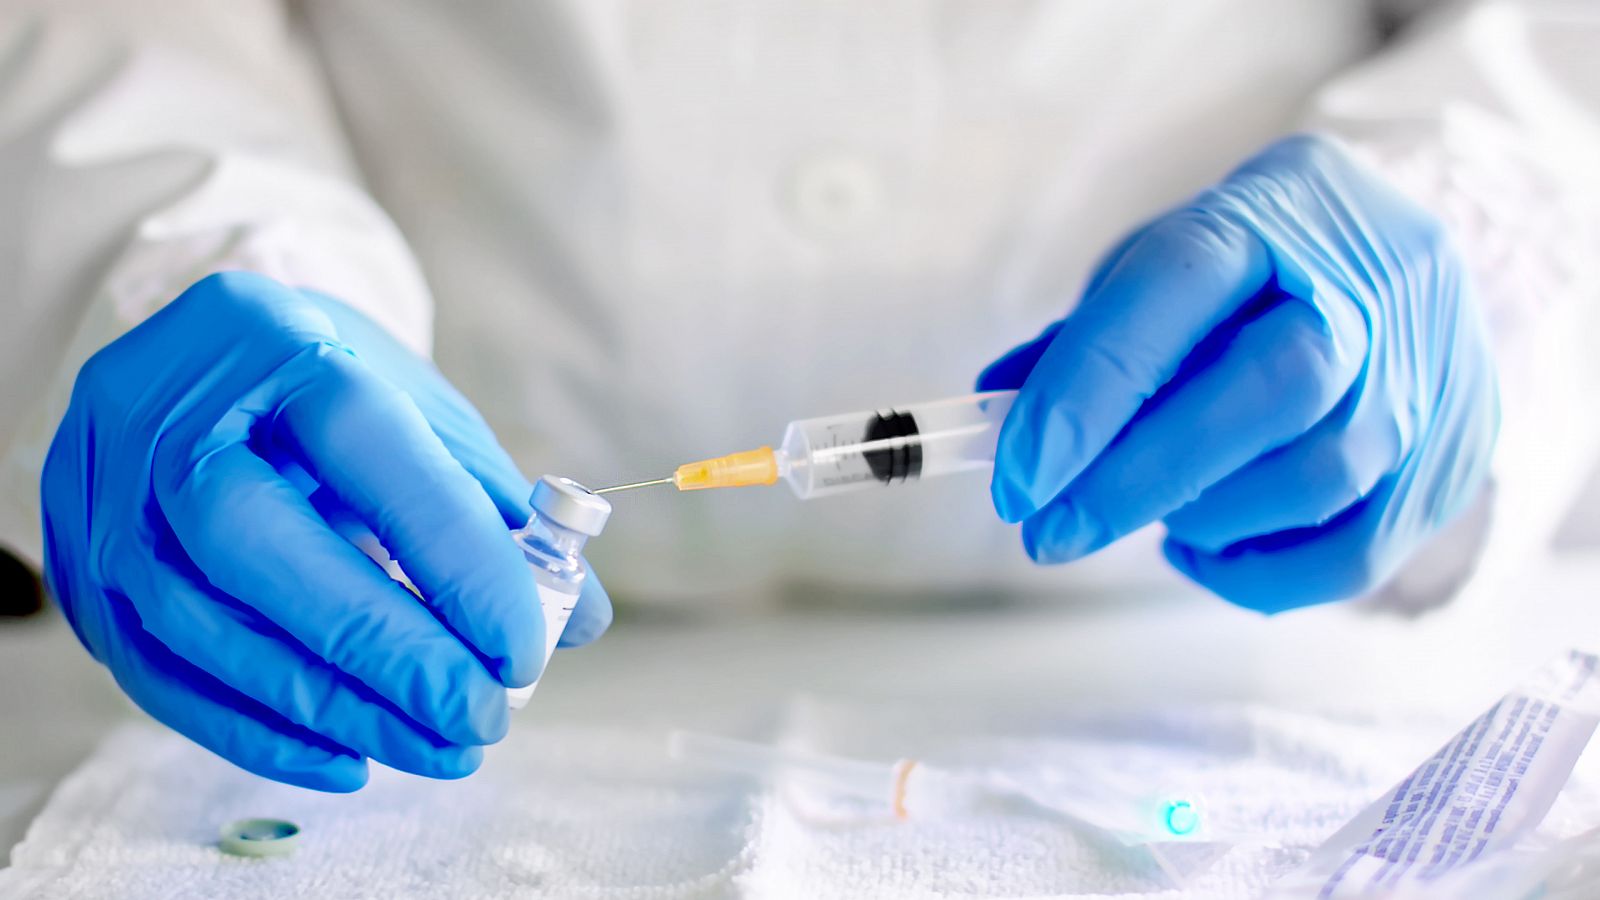 El candidato cubano a vacuna se aplicará en dos dosis inyectadas por vía intramuscular.